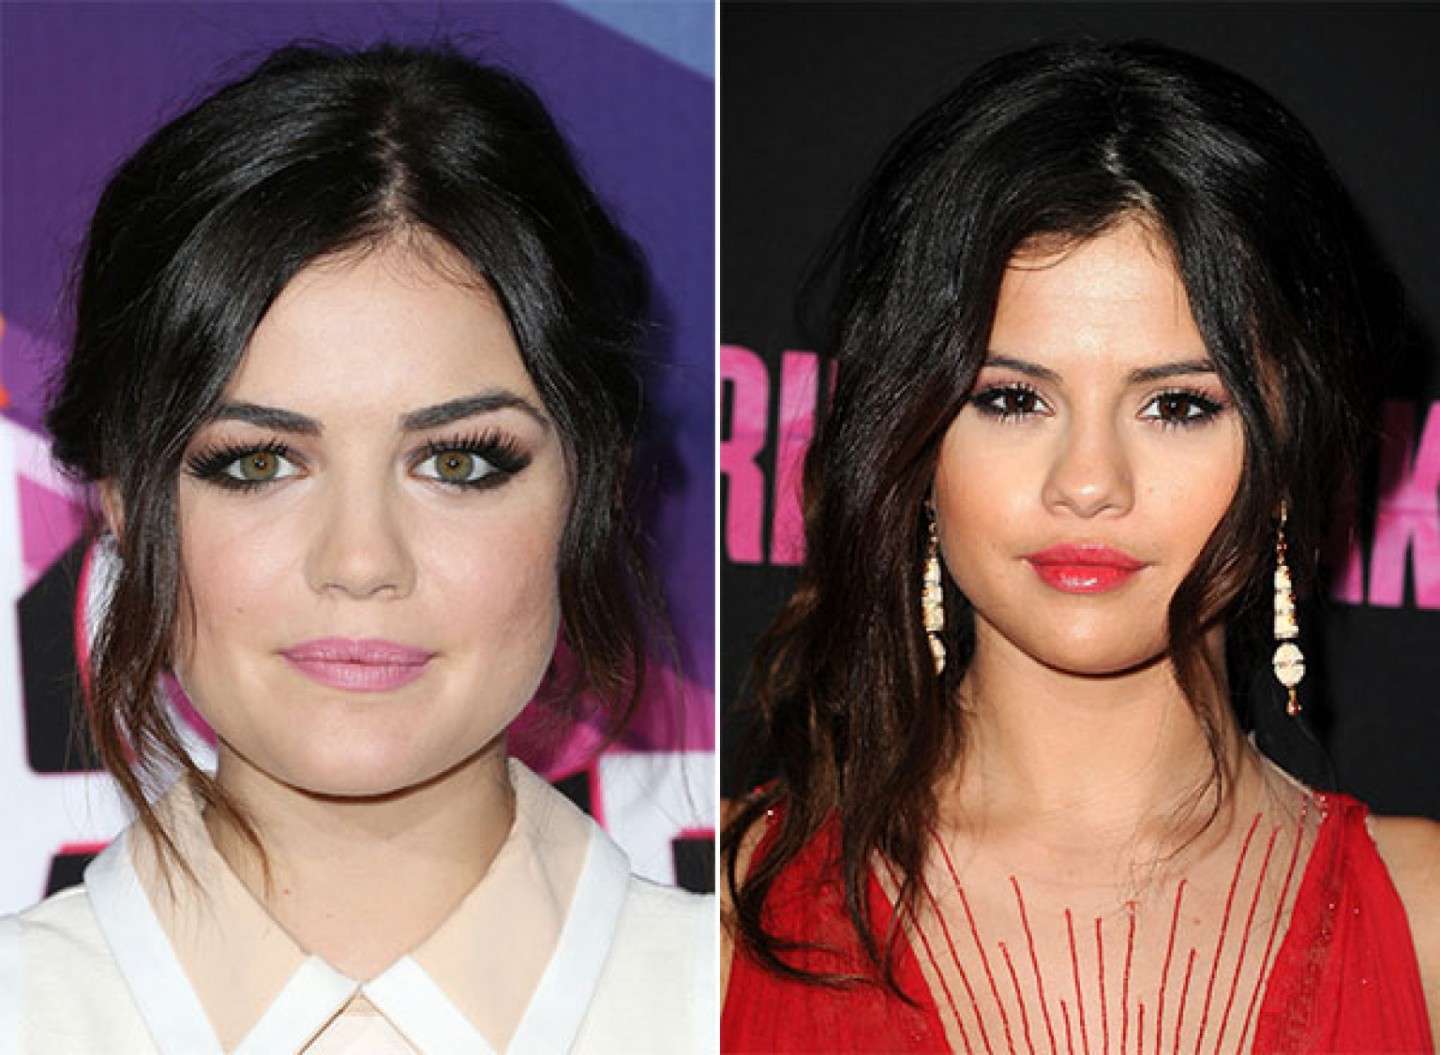 Somiglianza tra Lucy Hale e Selena Gomez